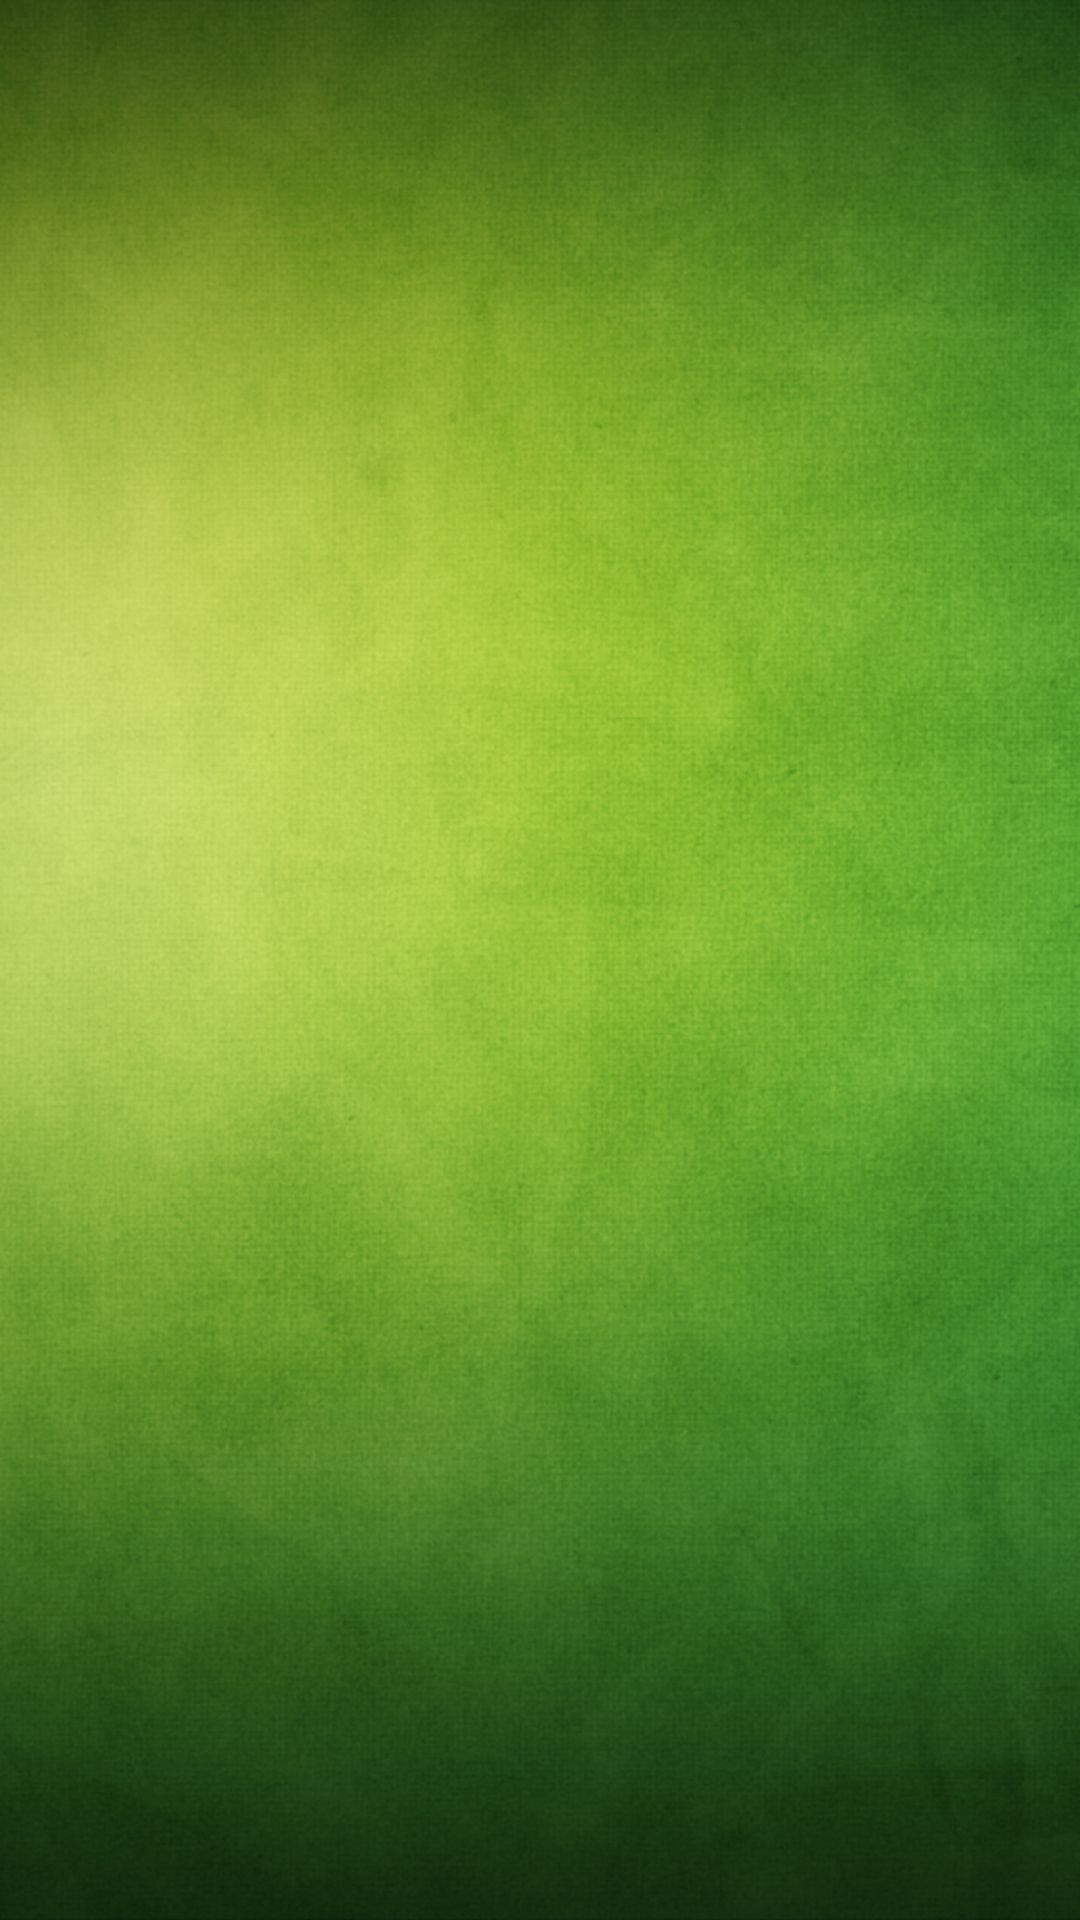 Das Green Blur Wallpaper 1080x1920